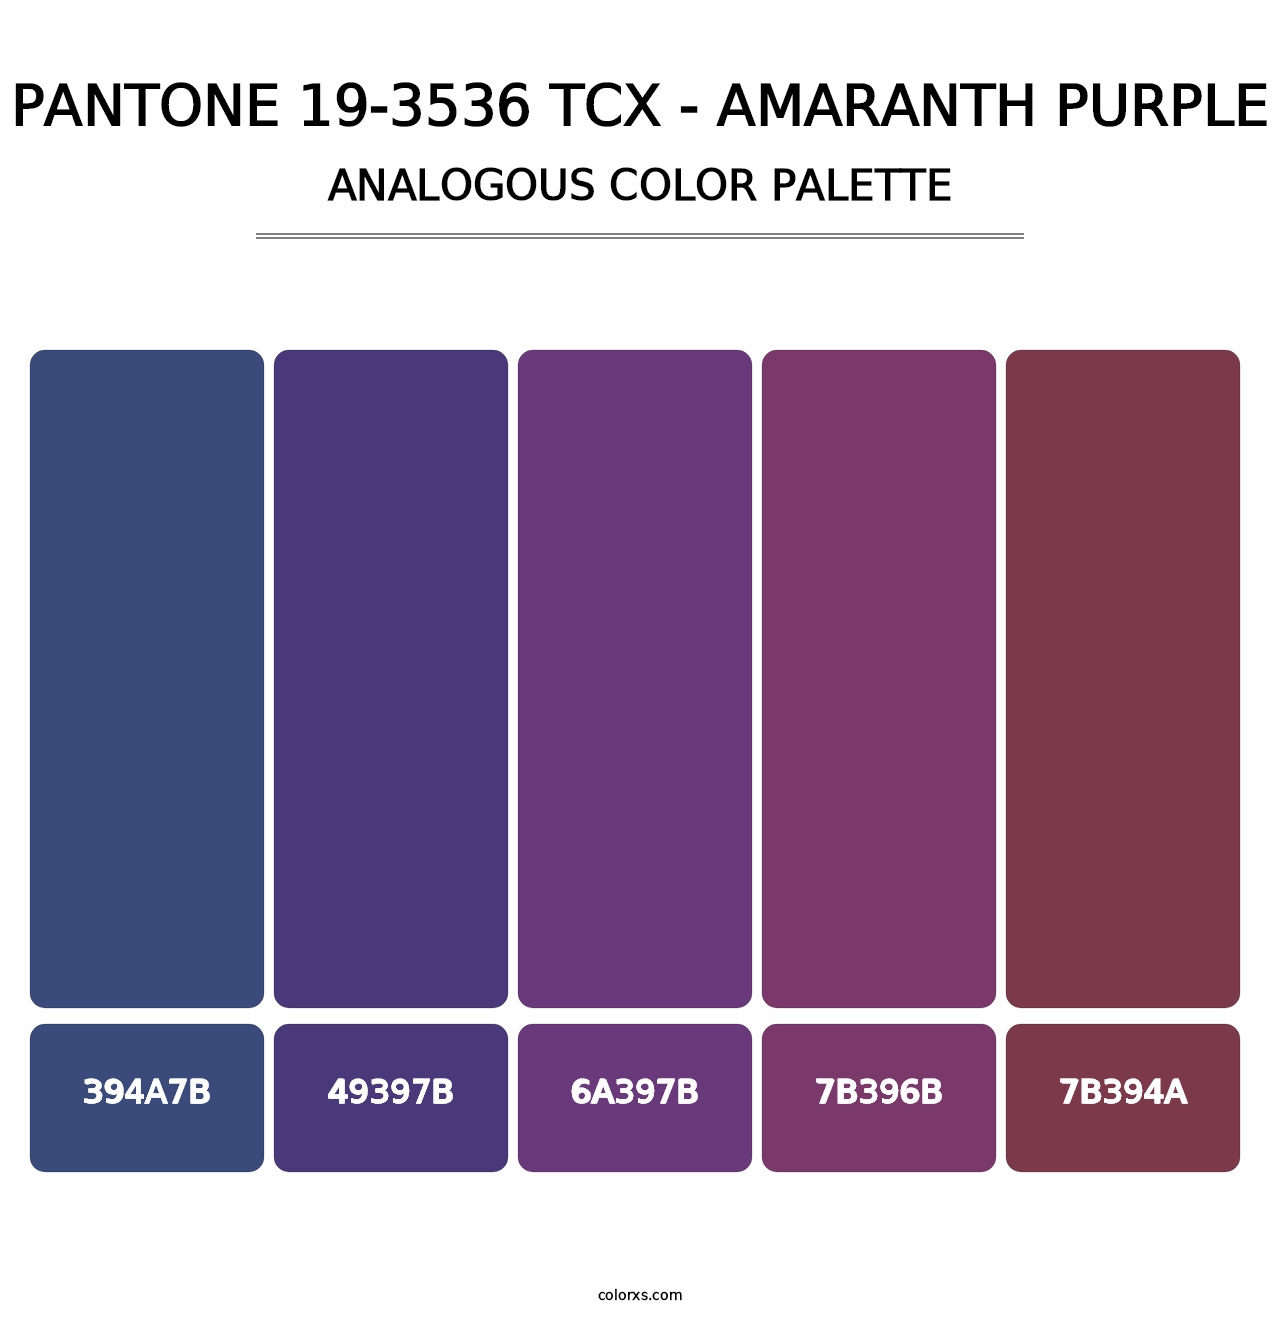 PANTONE 19-3536 TCX - Amaranth Purple - Analogous Color Palette